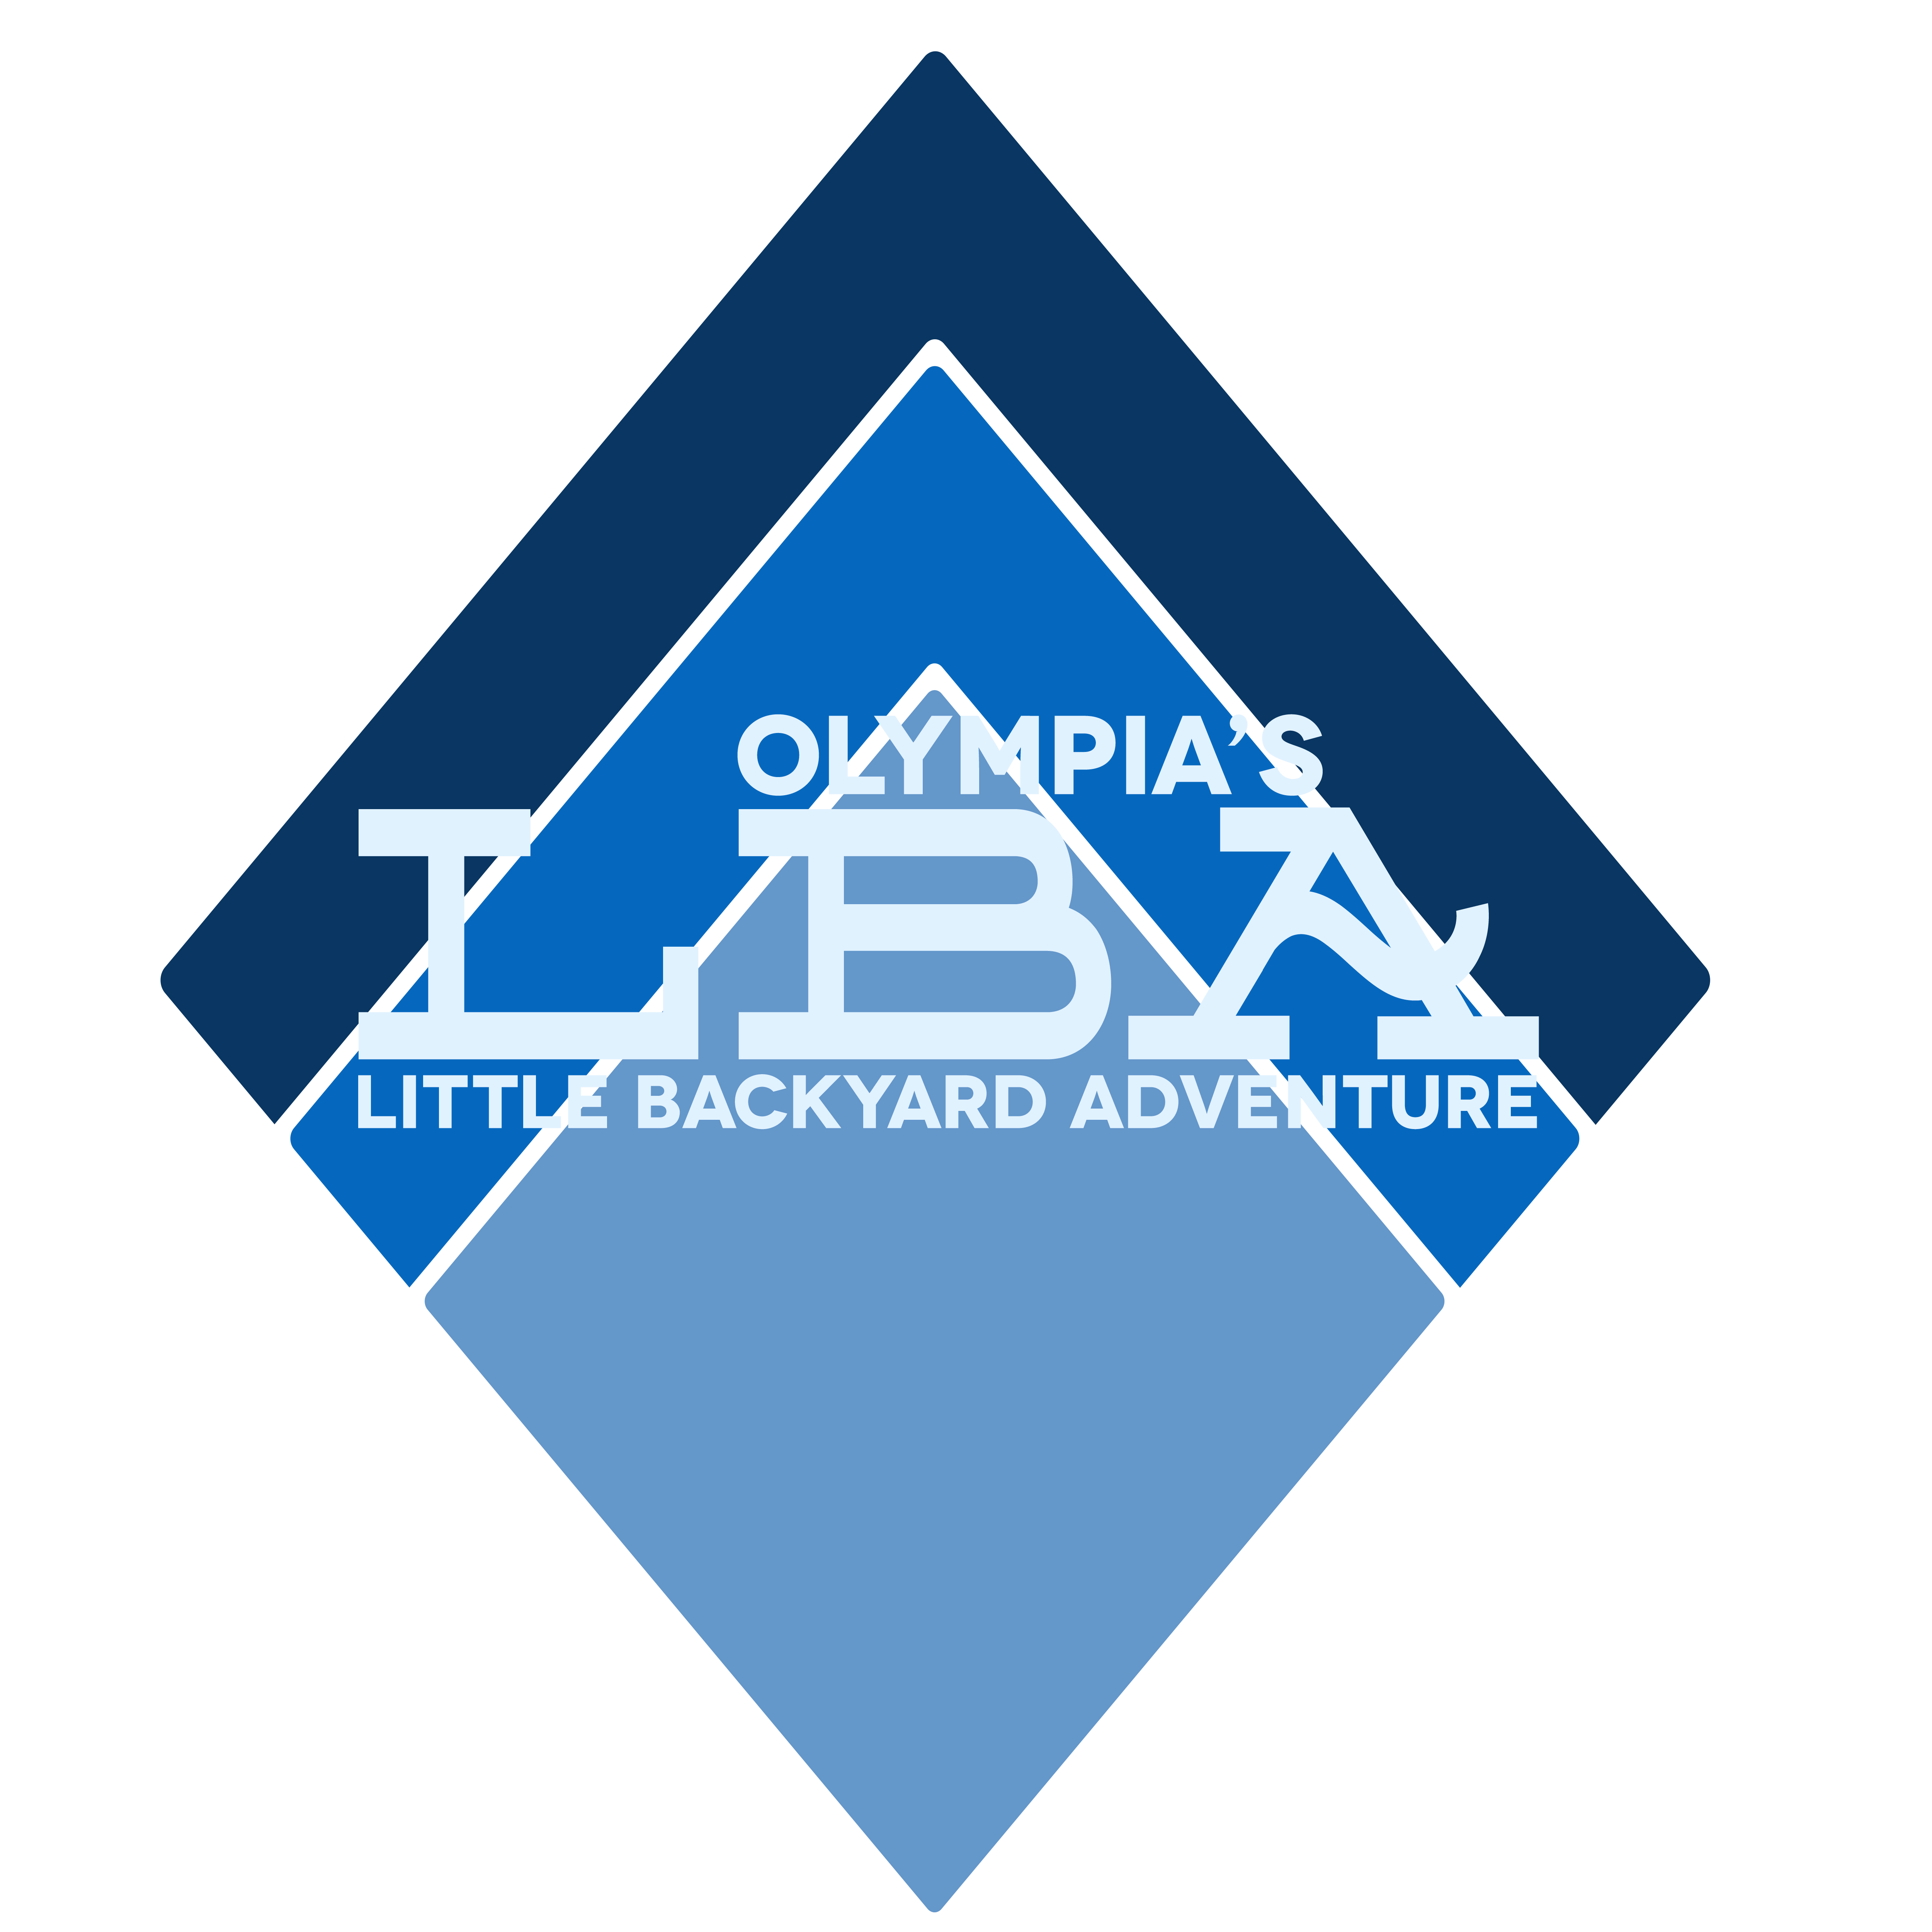 Little Backyard Adventure logo on RaceRaves